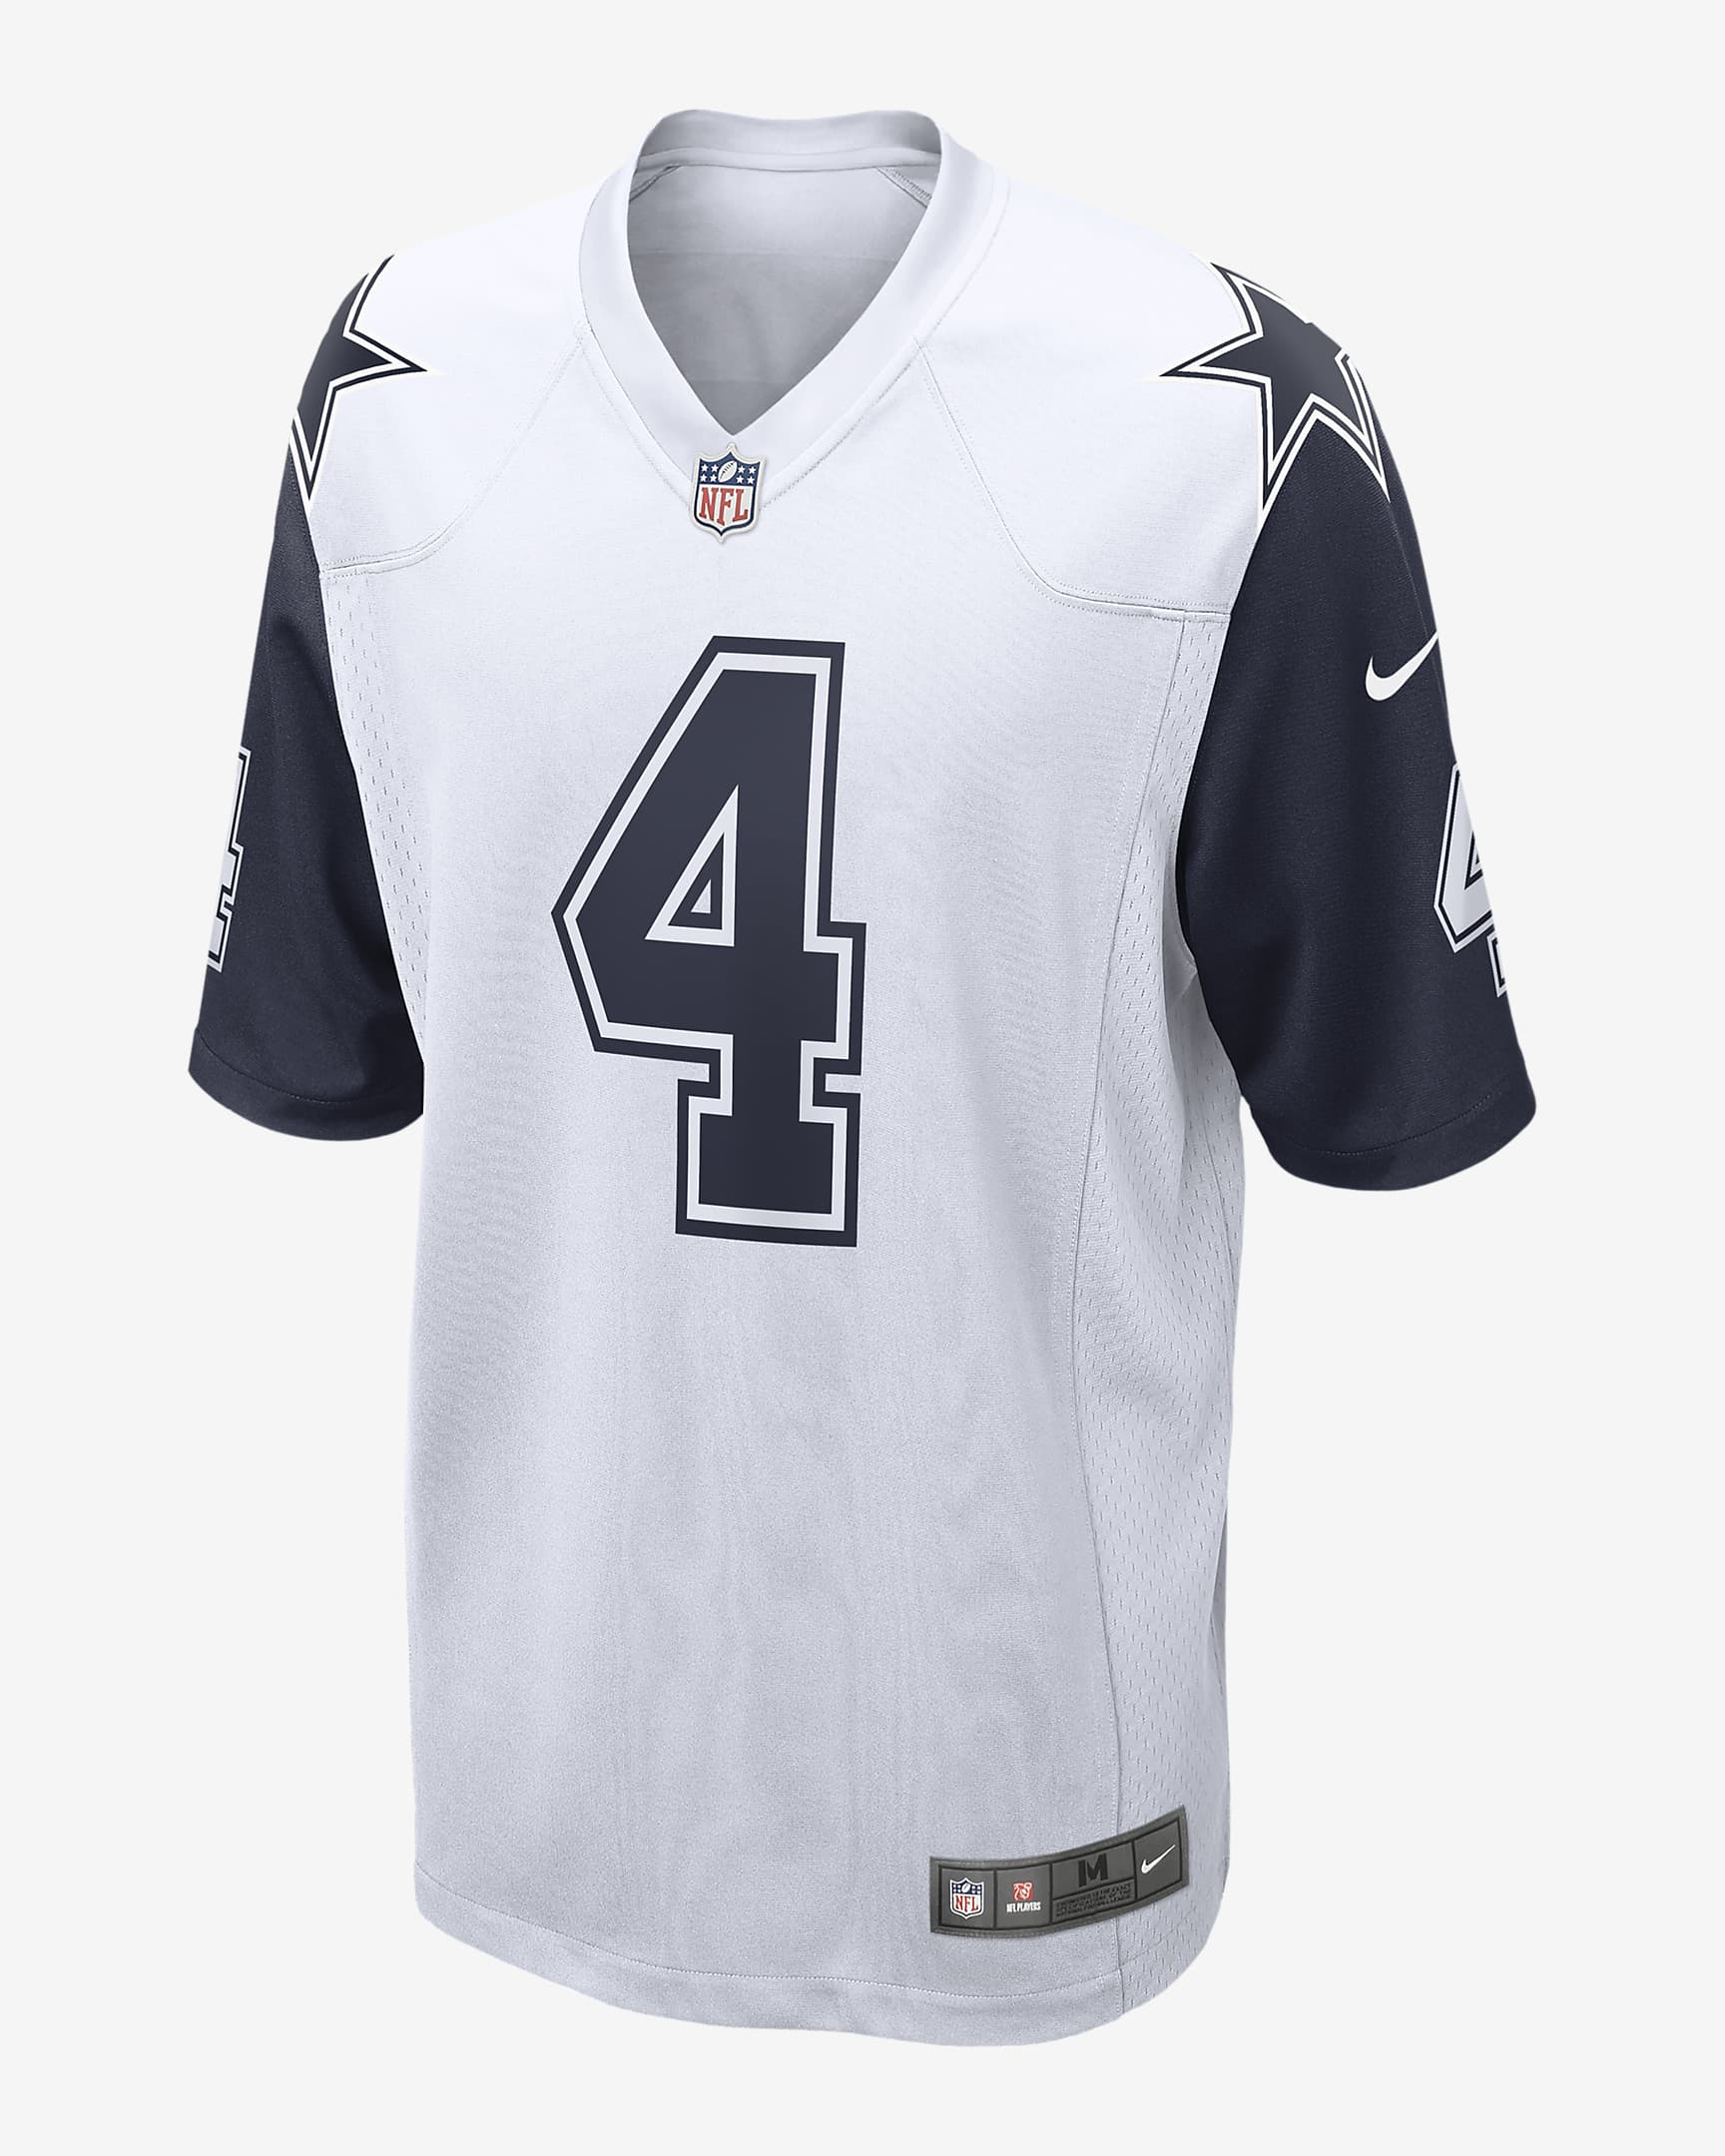 NFL Dallas Cowboys (Dak Prescott) Men's Game Football Jersey. Nike.com